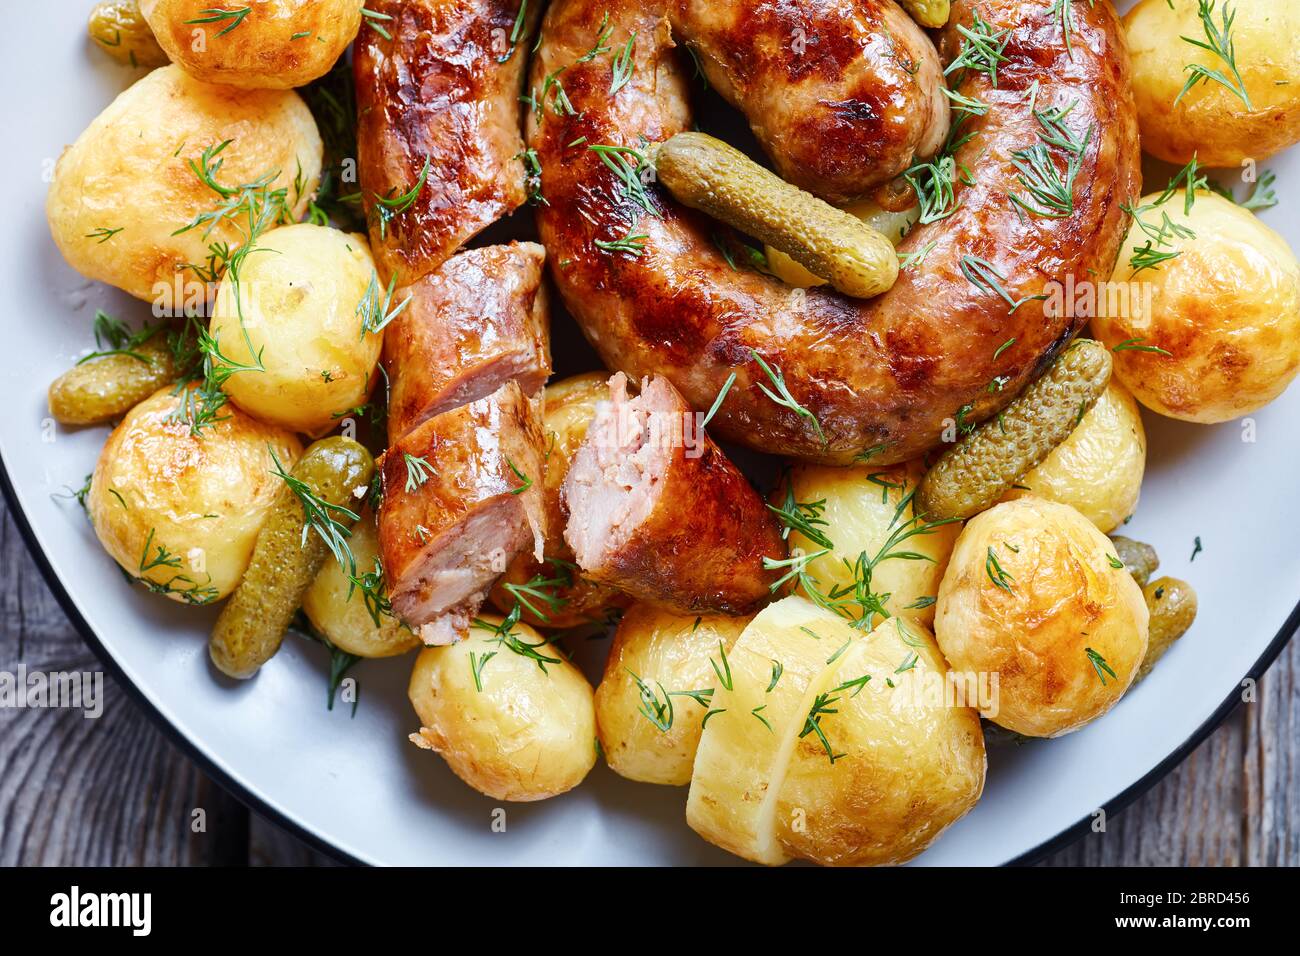 Deutsche Küche: Neue Kartoffeln gekocht und gebraten, serviert mit runder Wurst und eingelegten Gurken, bestreut mit frischem Dill, serviert auf einem Teller auf einem alten Holz Stockfoto